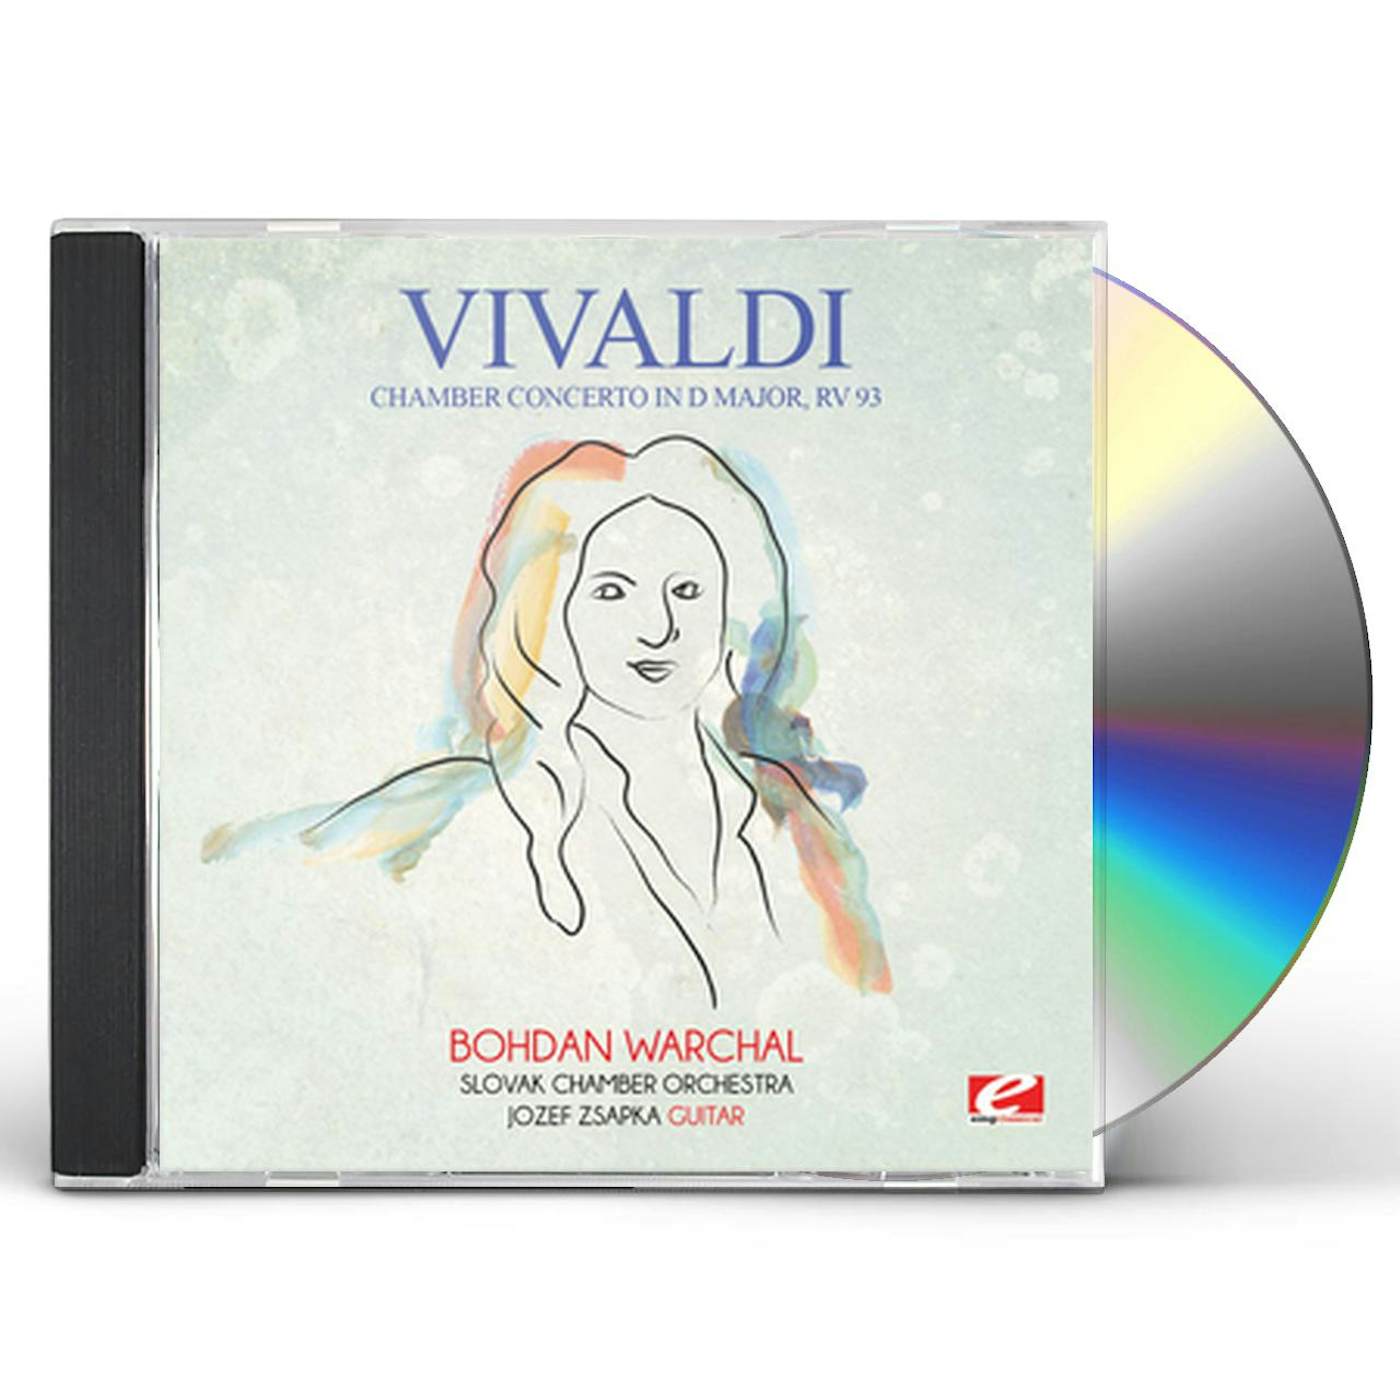 Antonio Vivaldi CHAMBER CONCERTO IN D MAJOR RV 93 CD